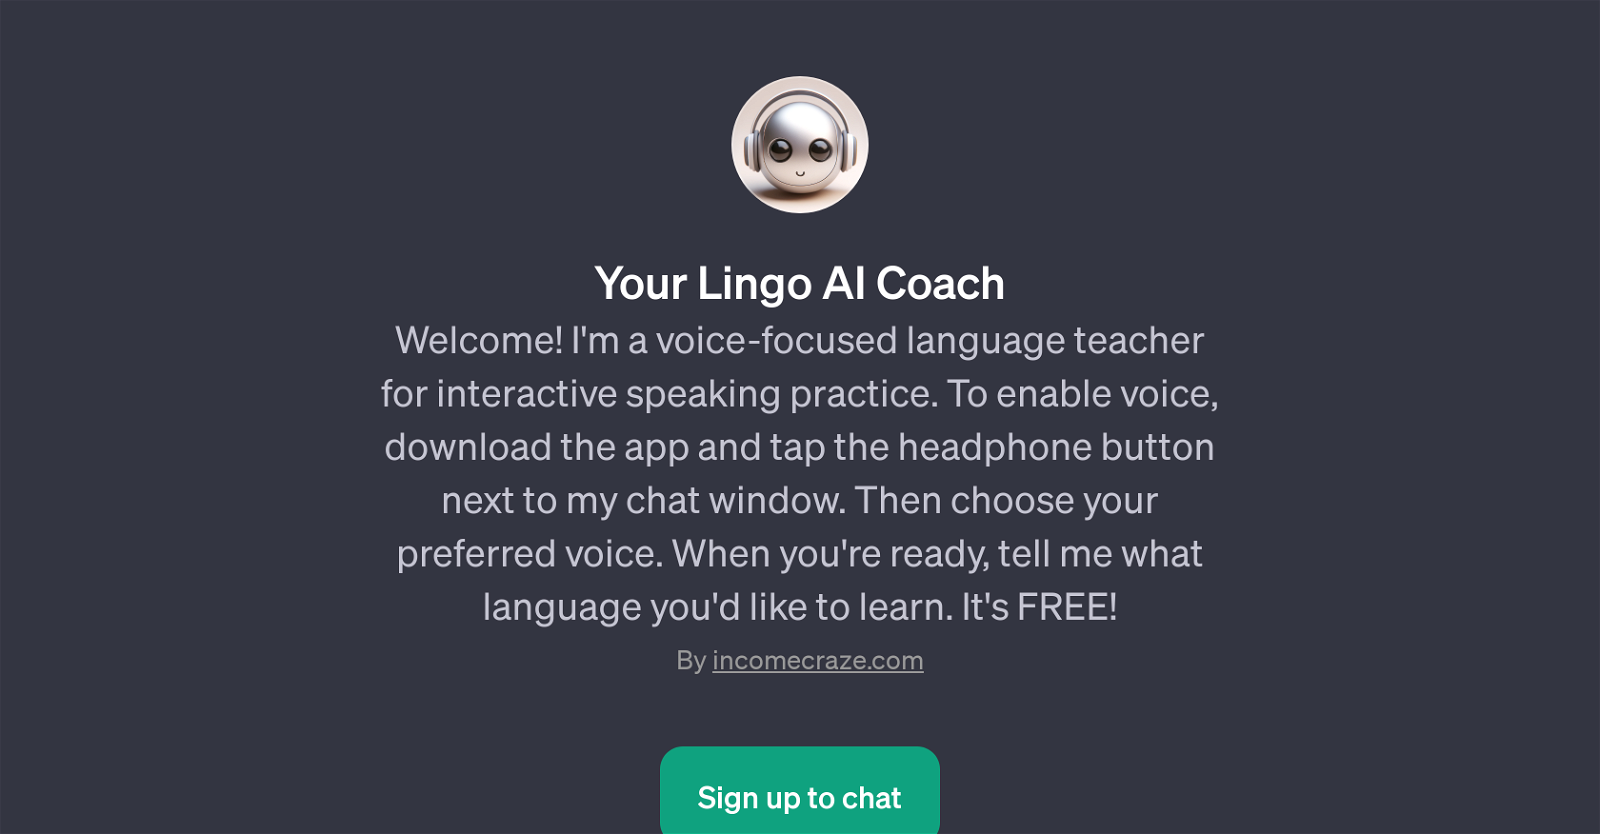 Your Lingo AI Coach website